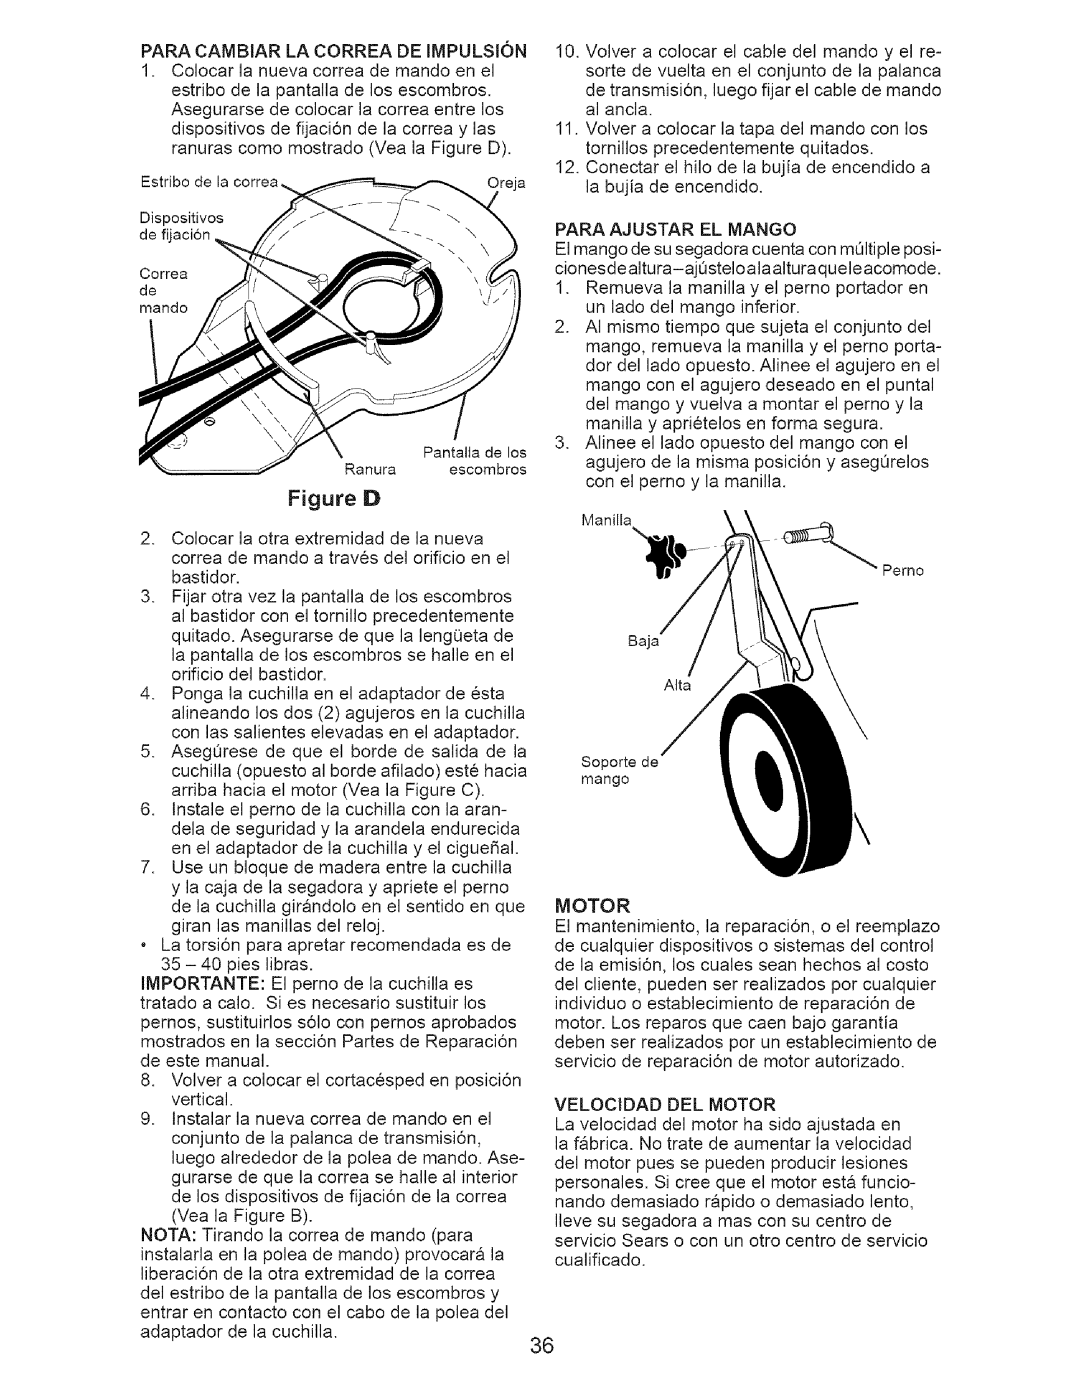 Craftsman 917-371813 manual Paracambiarlacorreadeimpulsion, Colocarla nuevacorreade mandoenel, Figure D, Motor 